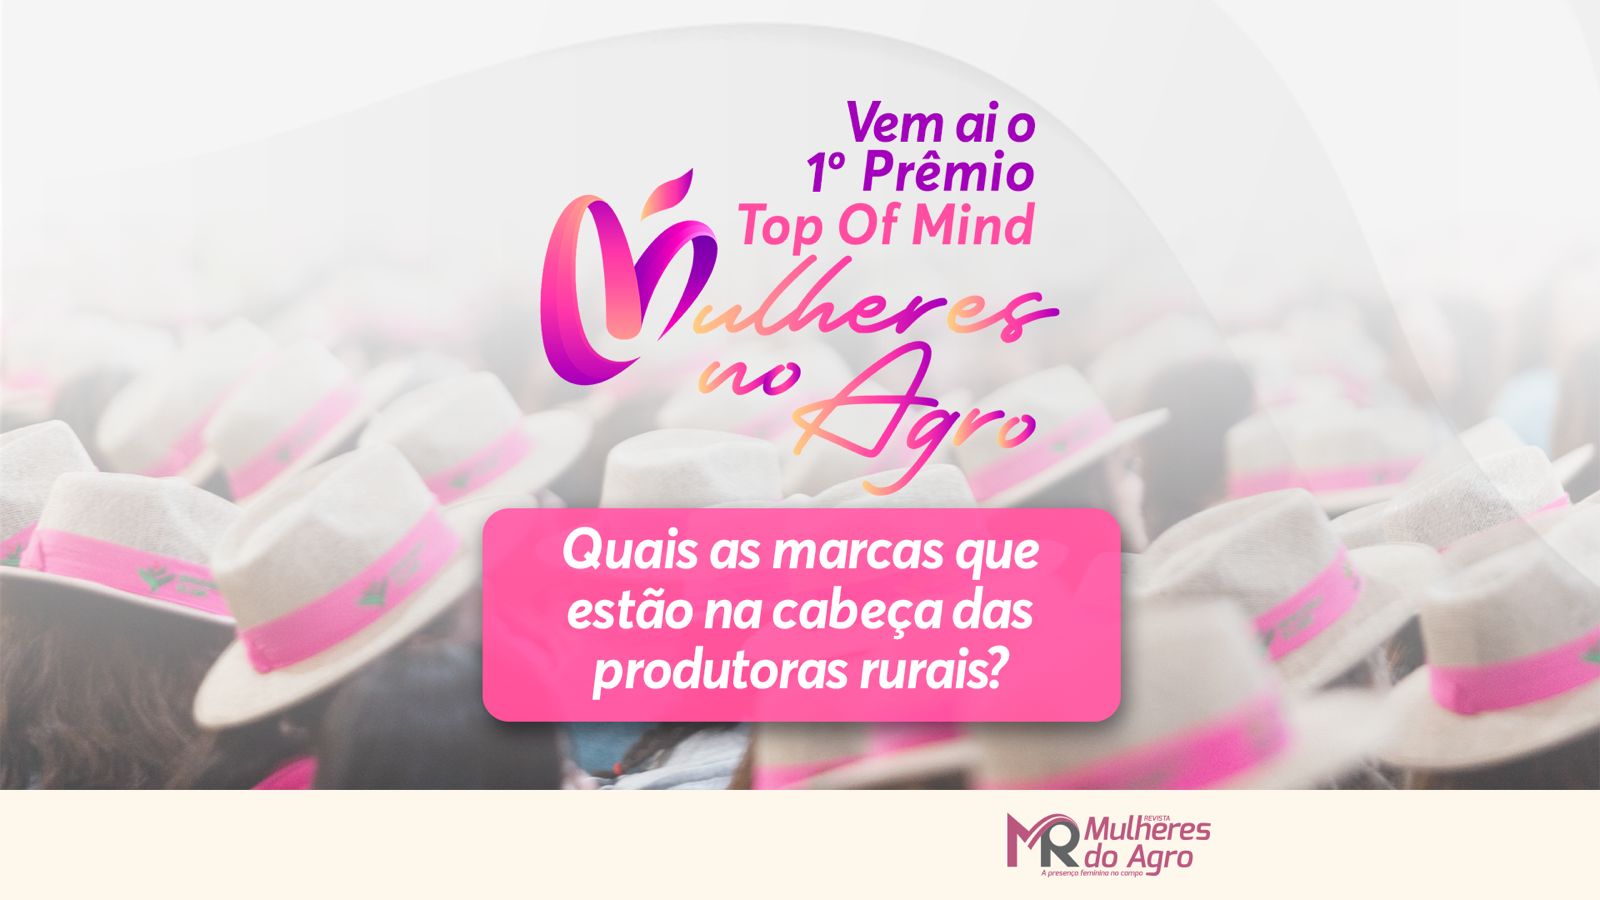 Saindo do forno a 1ª edição do prêmio “Top of Mind Mulheres do Agro”